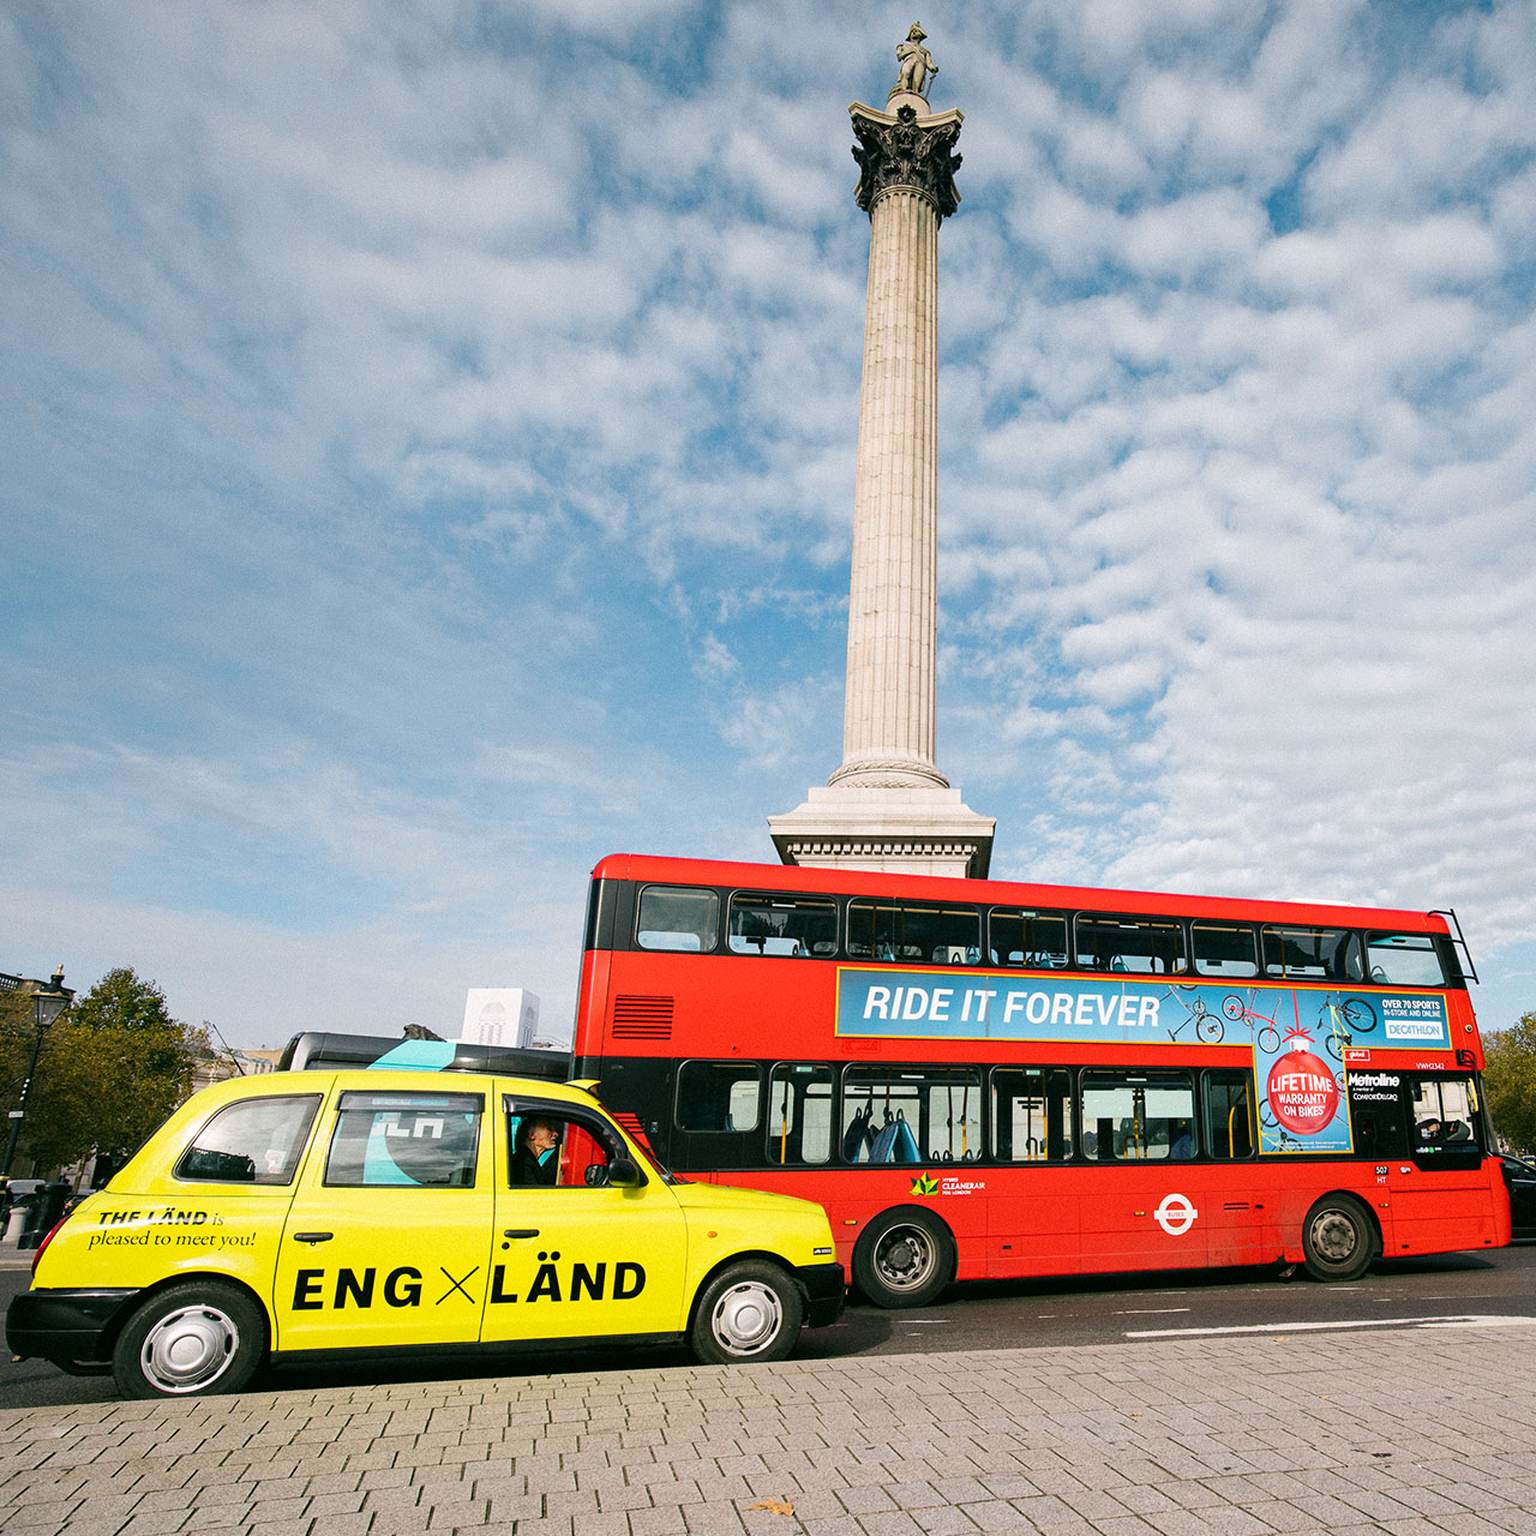 Ein neongelbes Taxi und ein roter Touristen-Bus stehen vor dem Buckingham Palace in England.